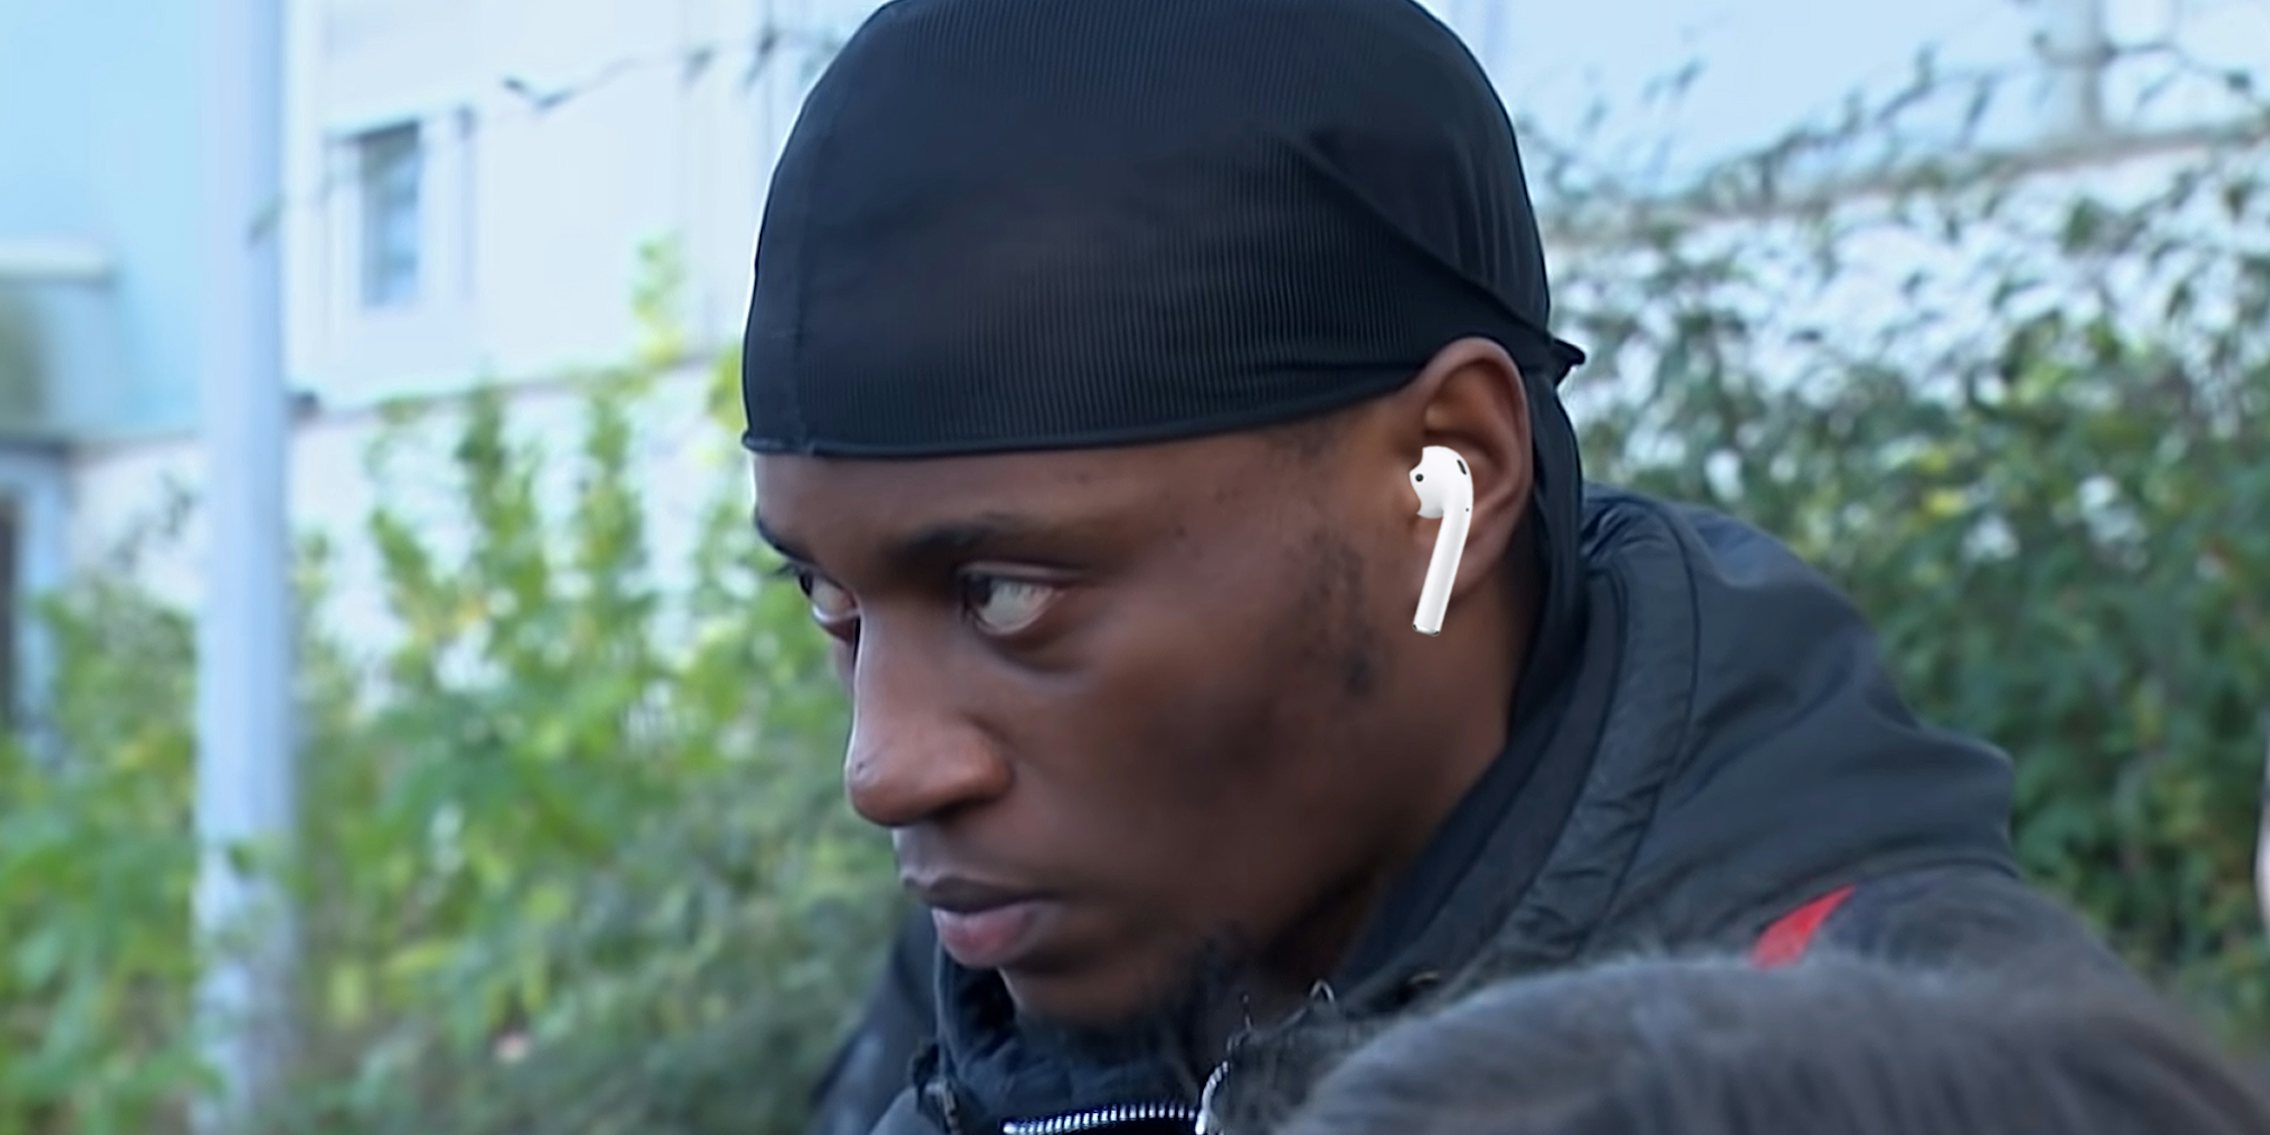 man staring intently wearing earpod